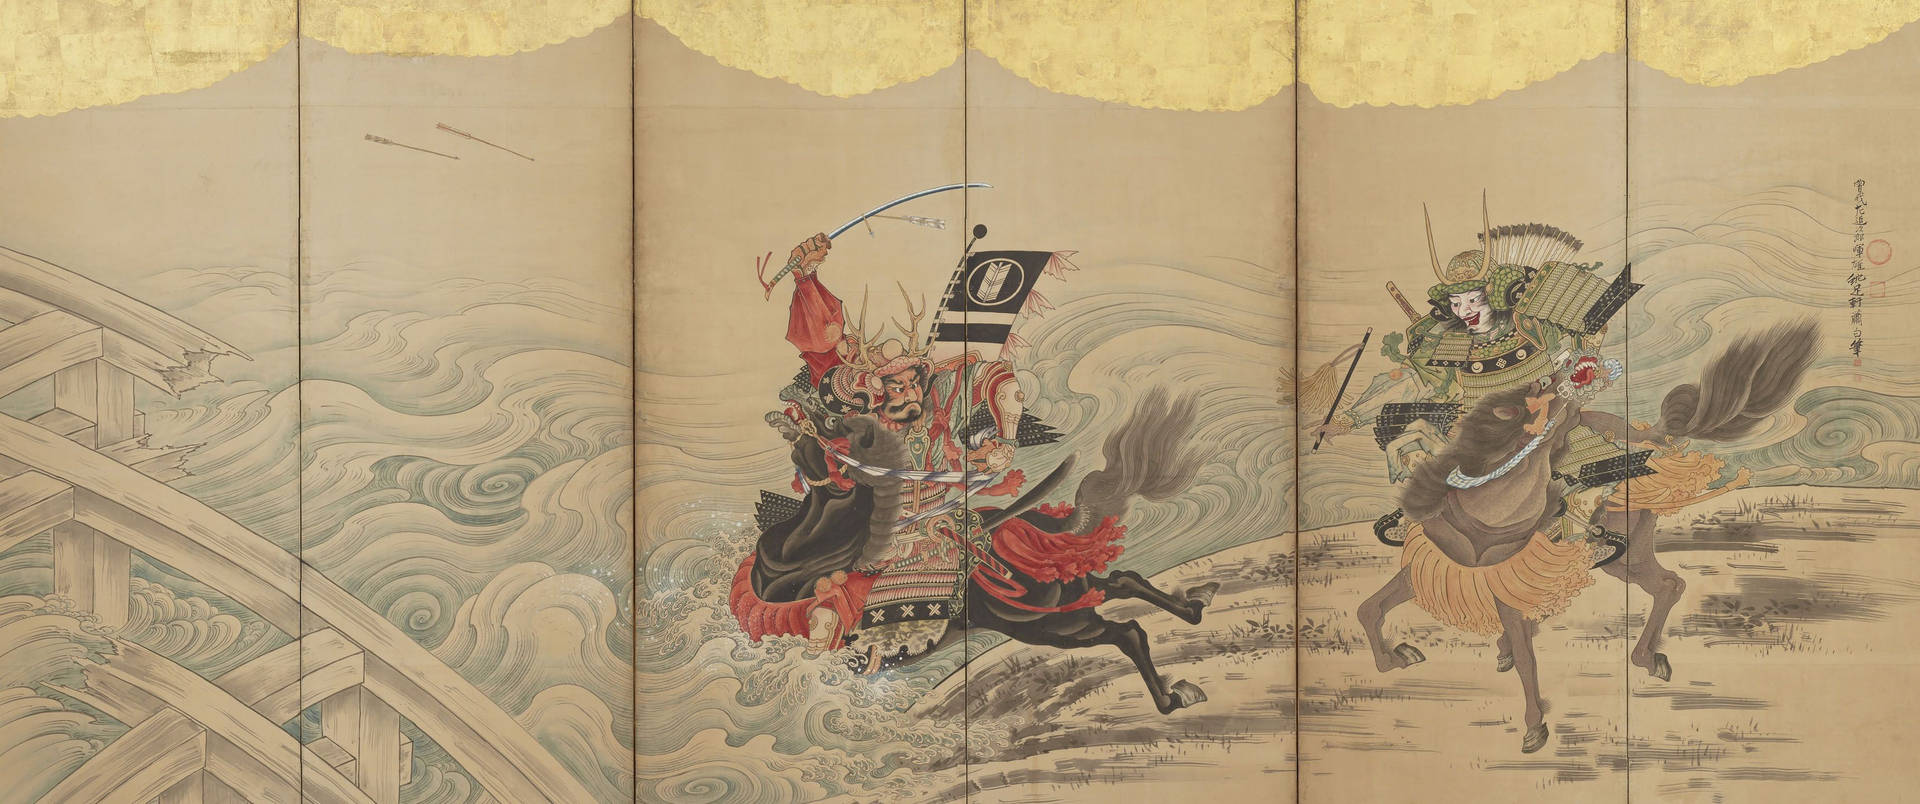 Genießensie Ein Visuelles Fest Der Antiken Samurai-kunst. Wallpaper